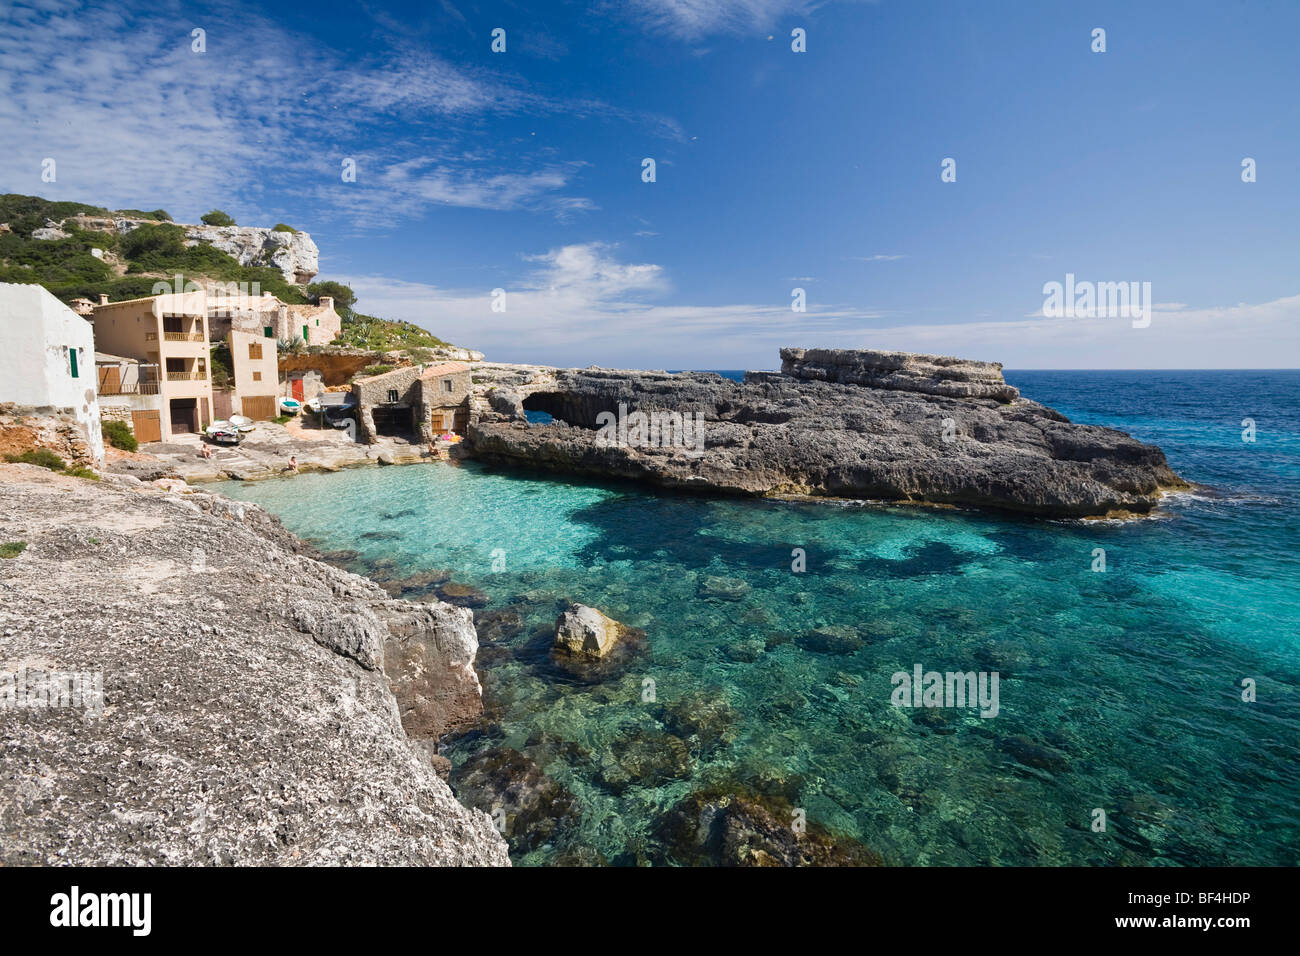 Cala s'Almonia Bucht, Mallorca, Mallorca, Balearen, Mittelmeer, Spanien, Europa Stockfoto